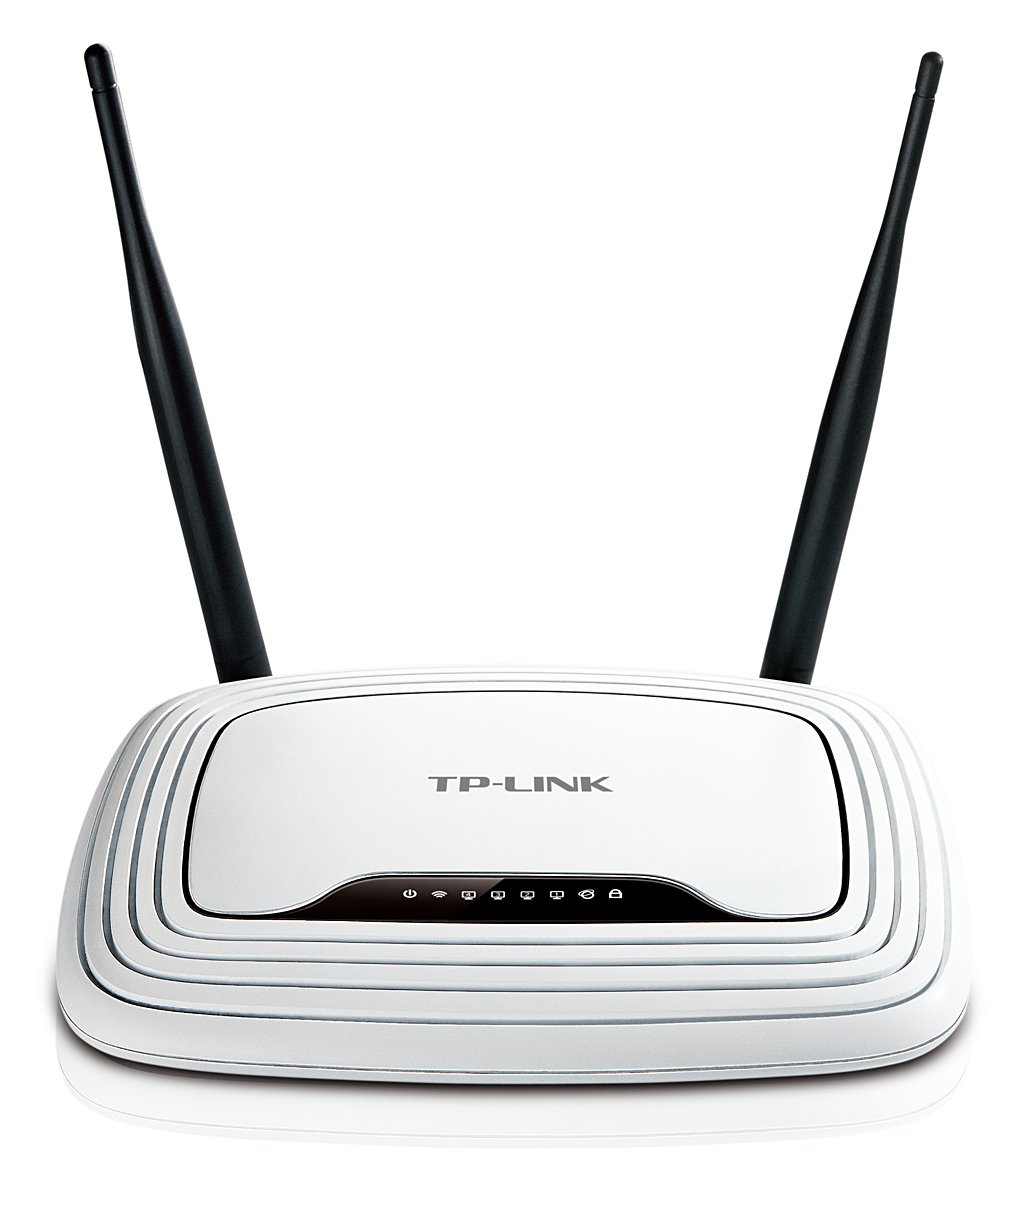 TP-LINK WLAN-N Router TLWR841N 300Mbps